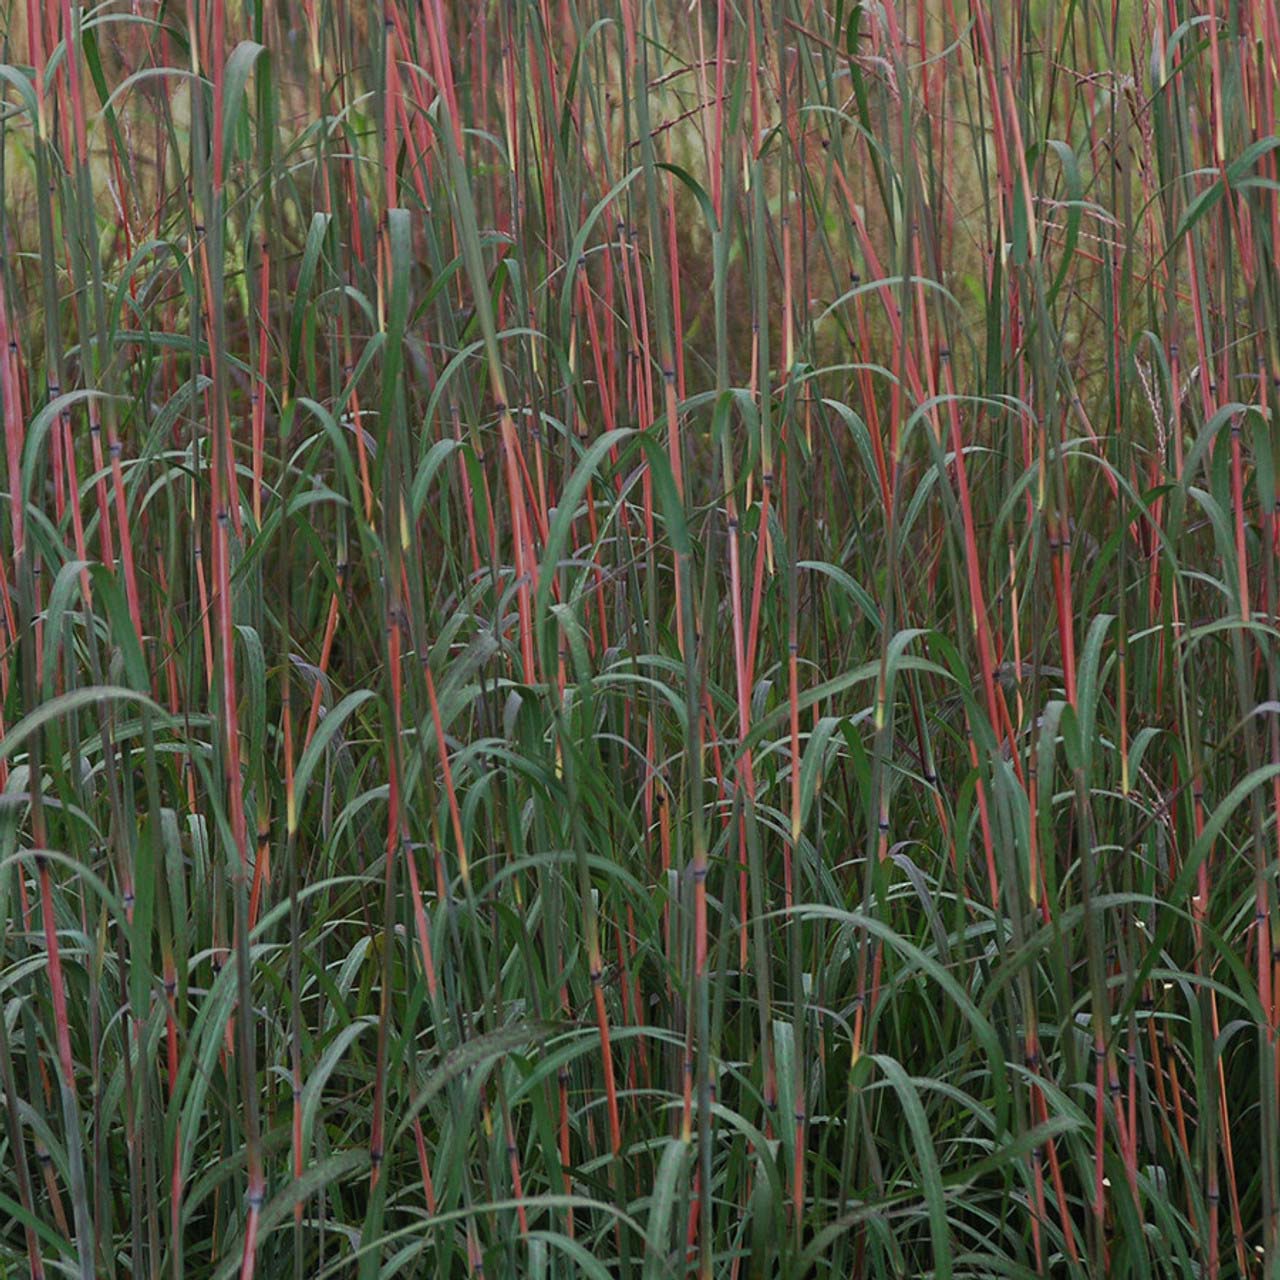 Andropogon – Holy Smoke Big Blue Stem Grass